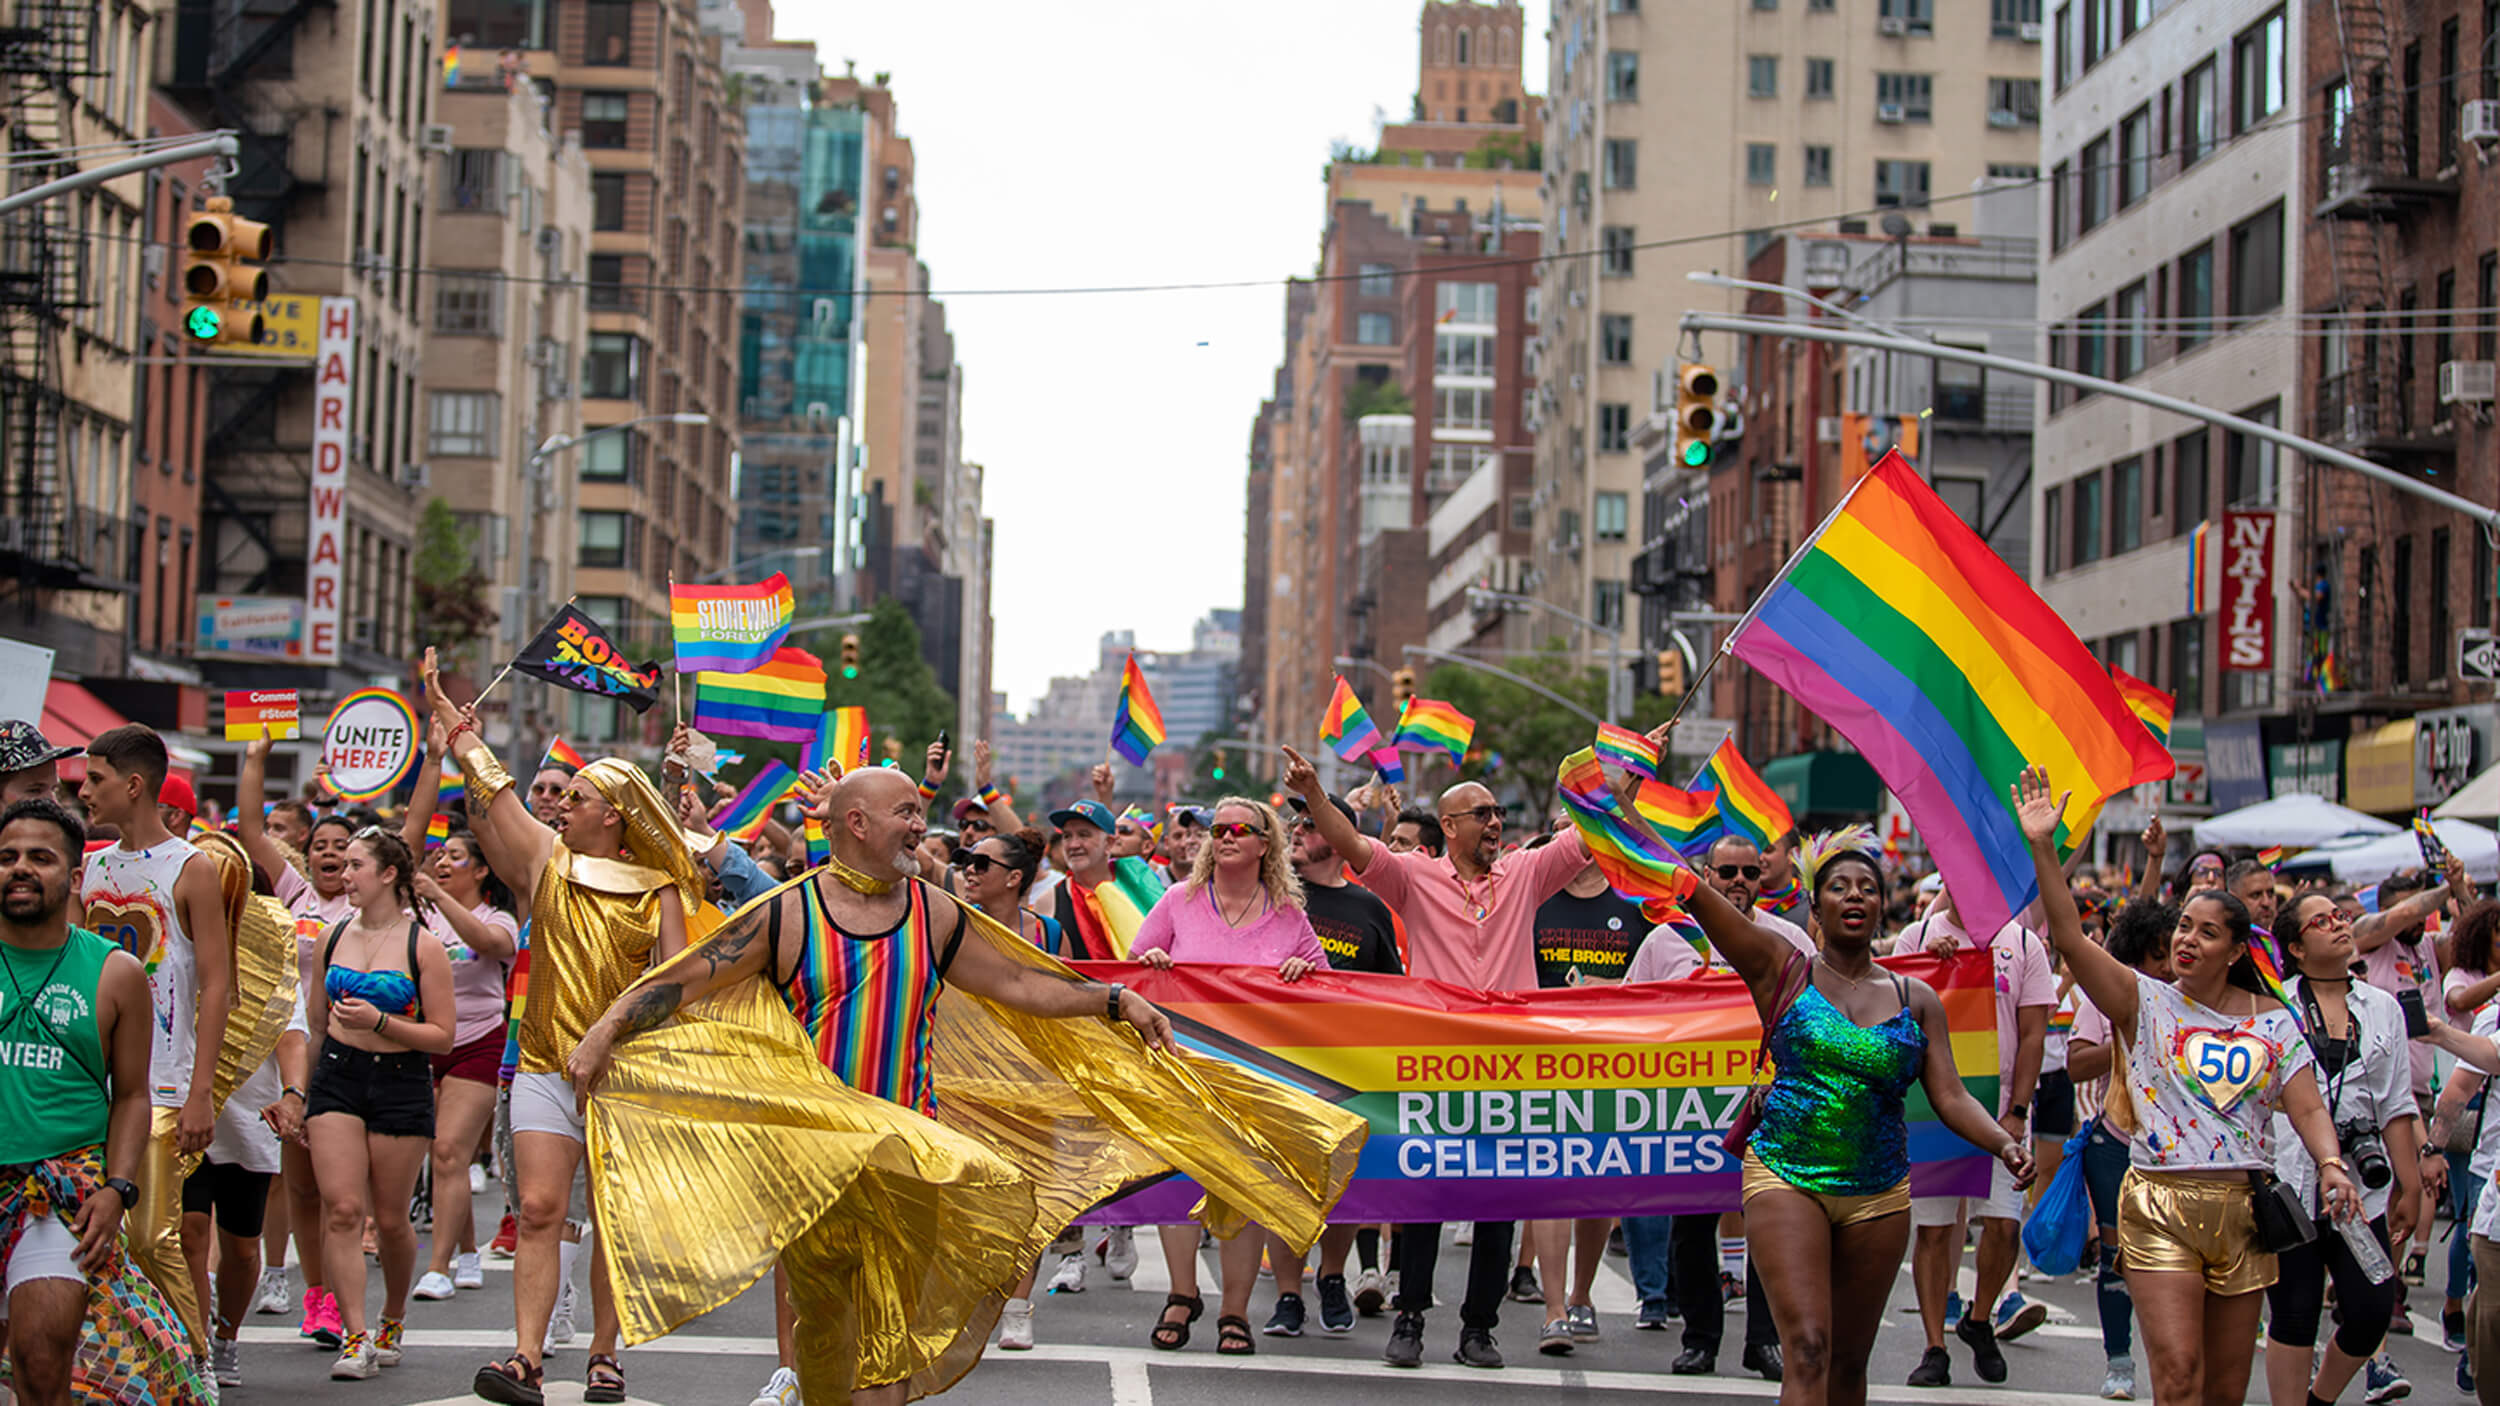 nyc gay pride events